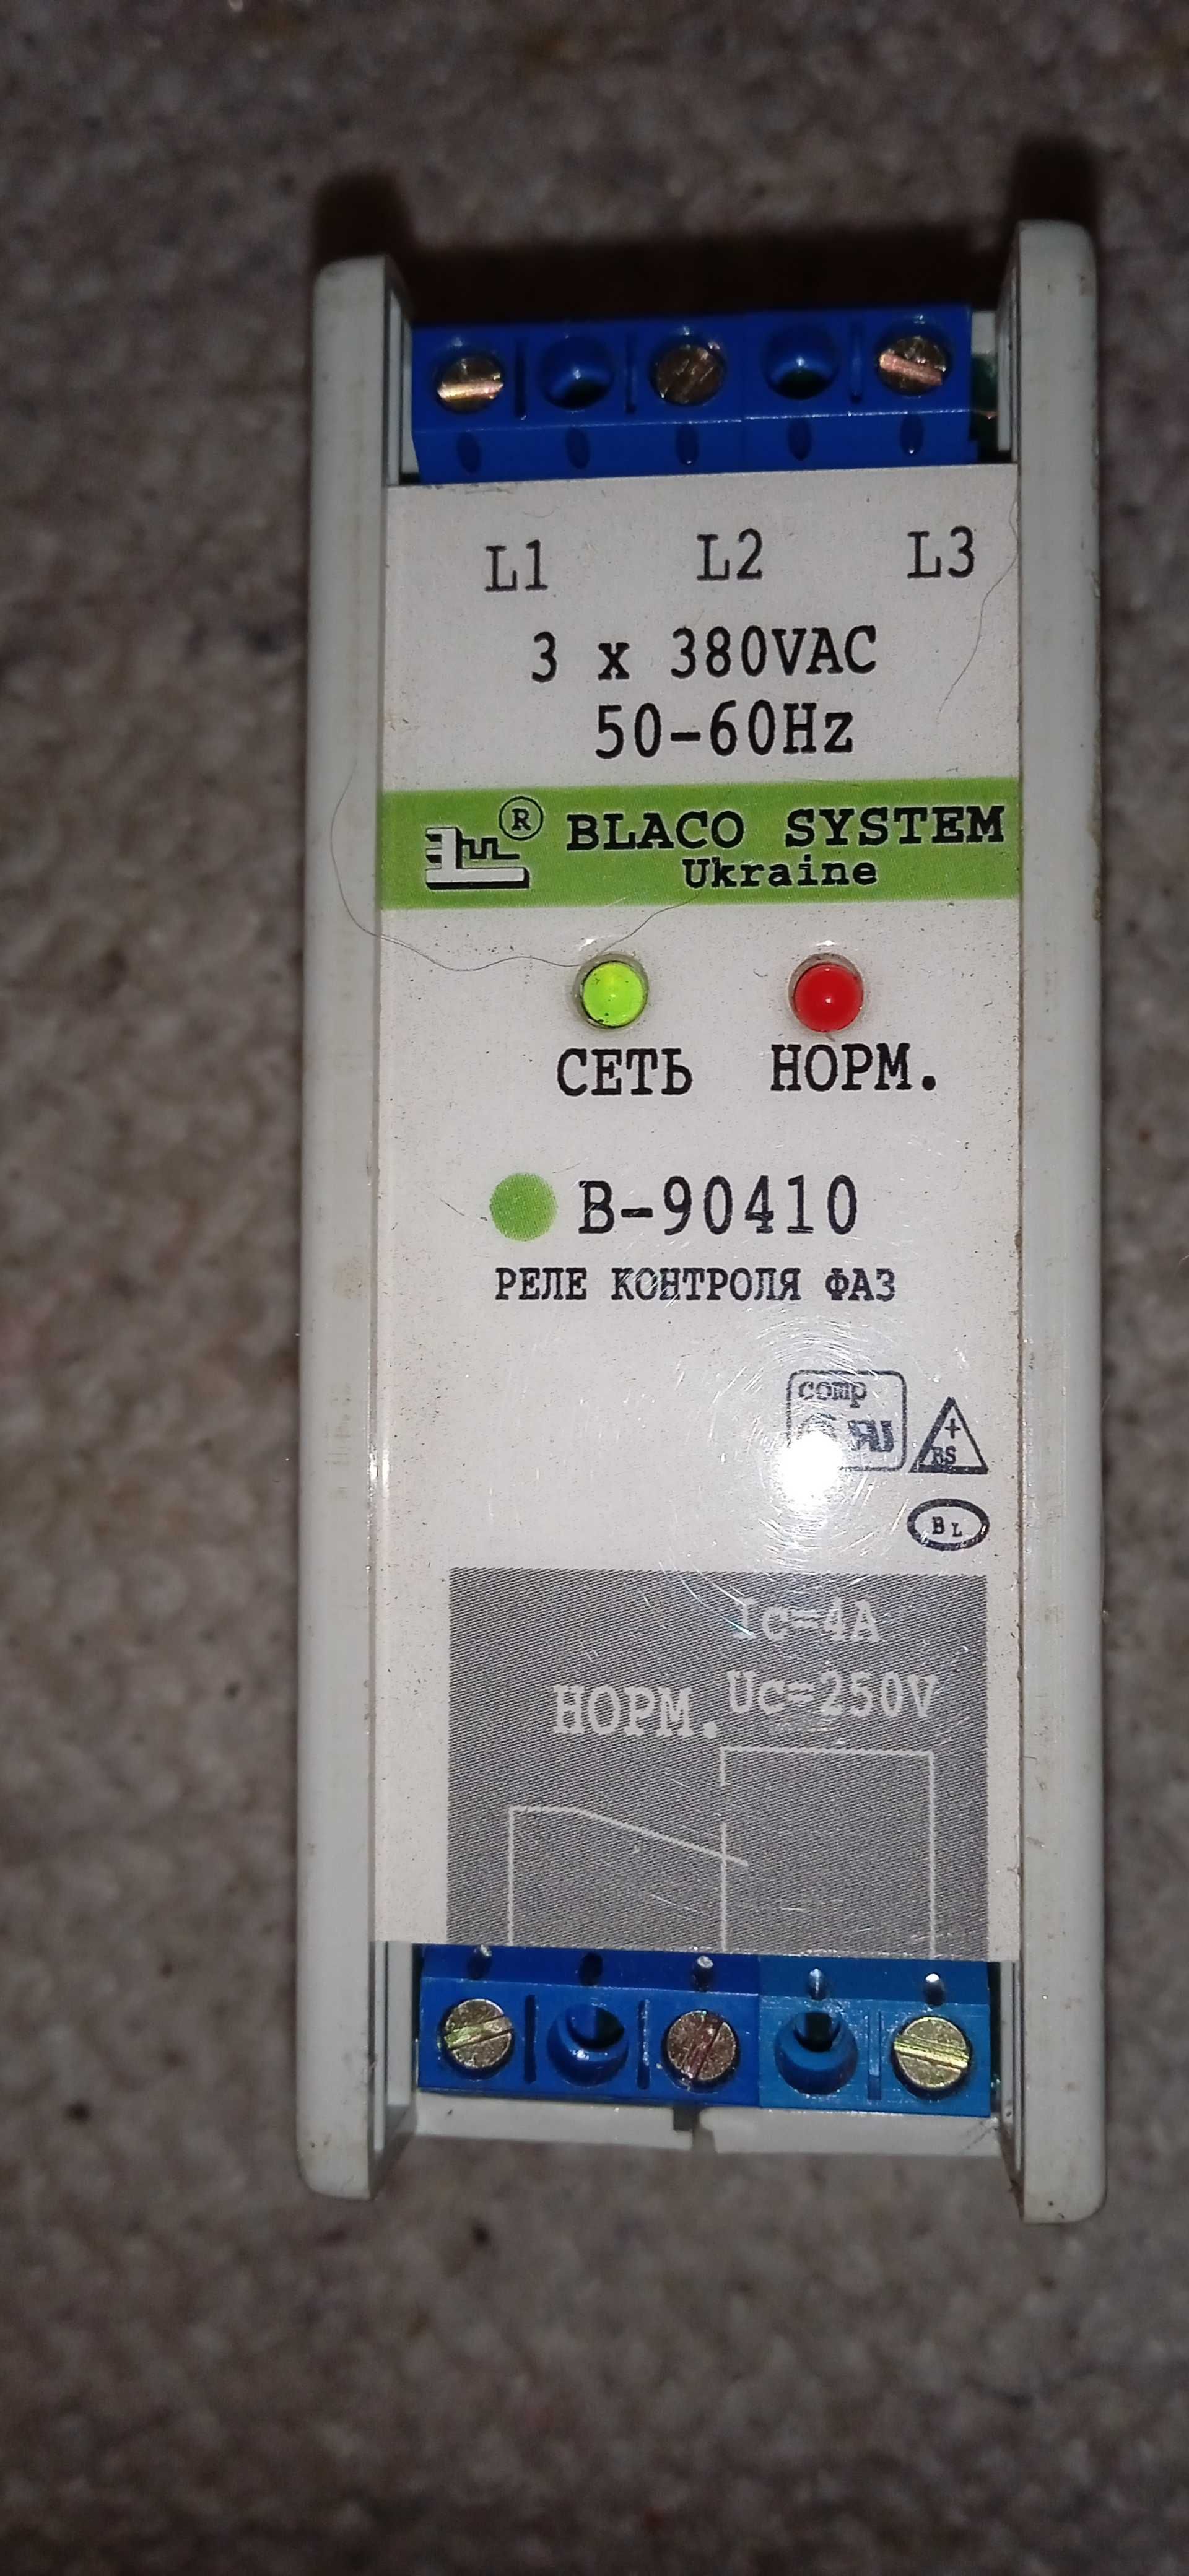 Продам реле контроля фаз В-90410 3х380V AC 50-60HZ